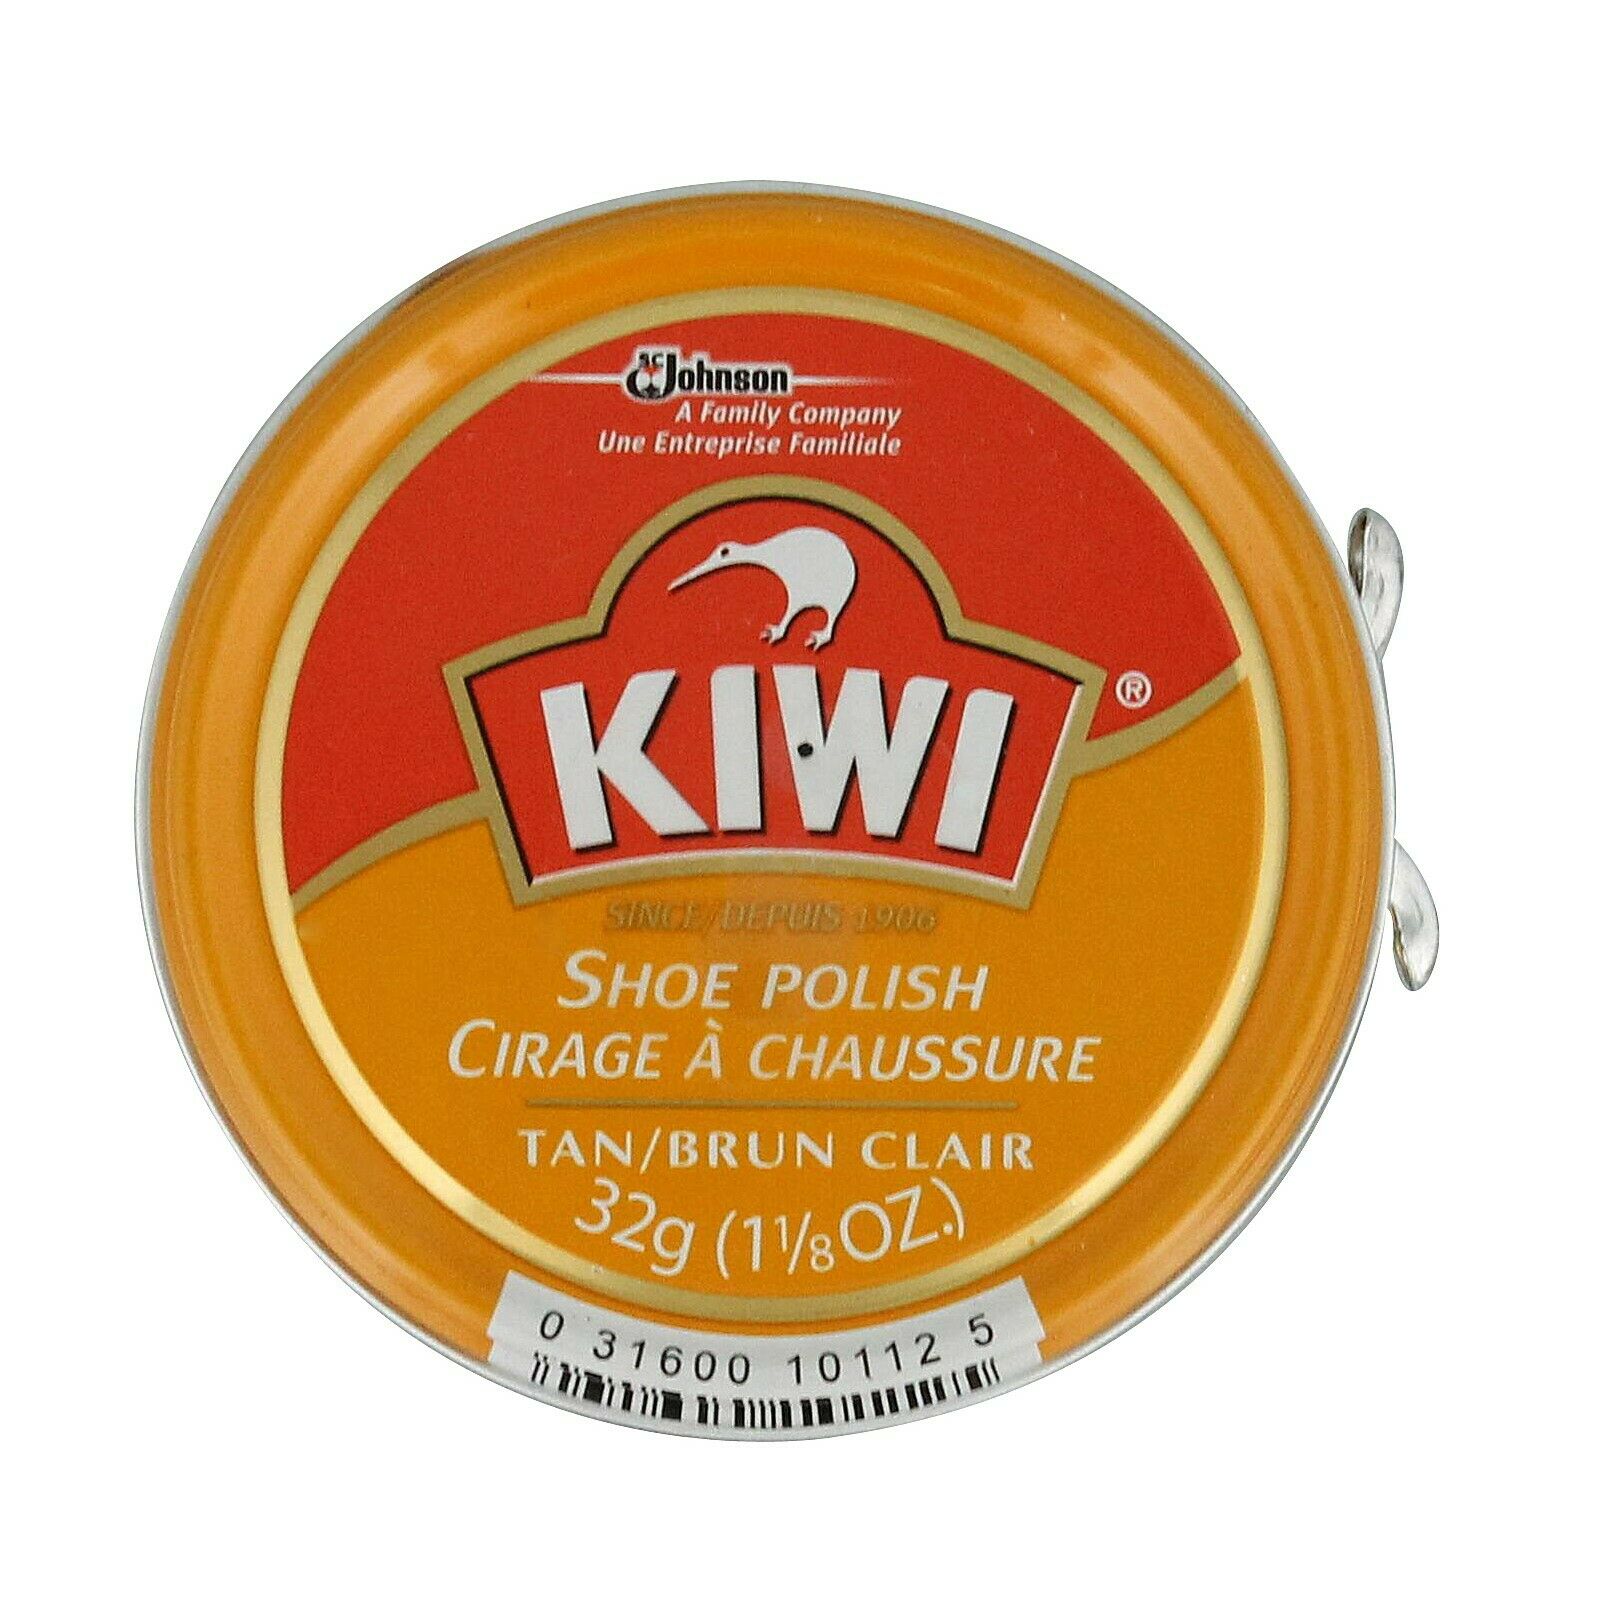 Kiwi Shoe Polish (32g) | lupon.gov.ph